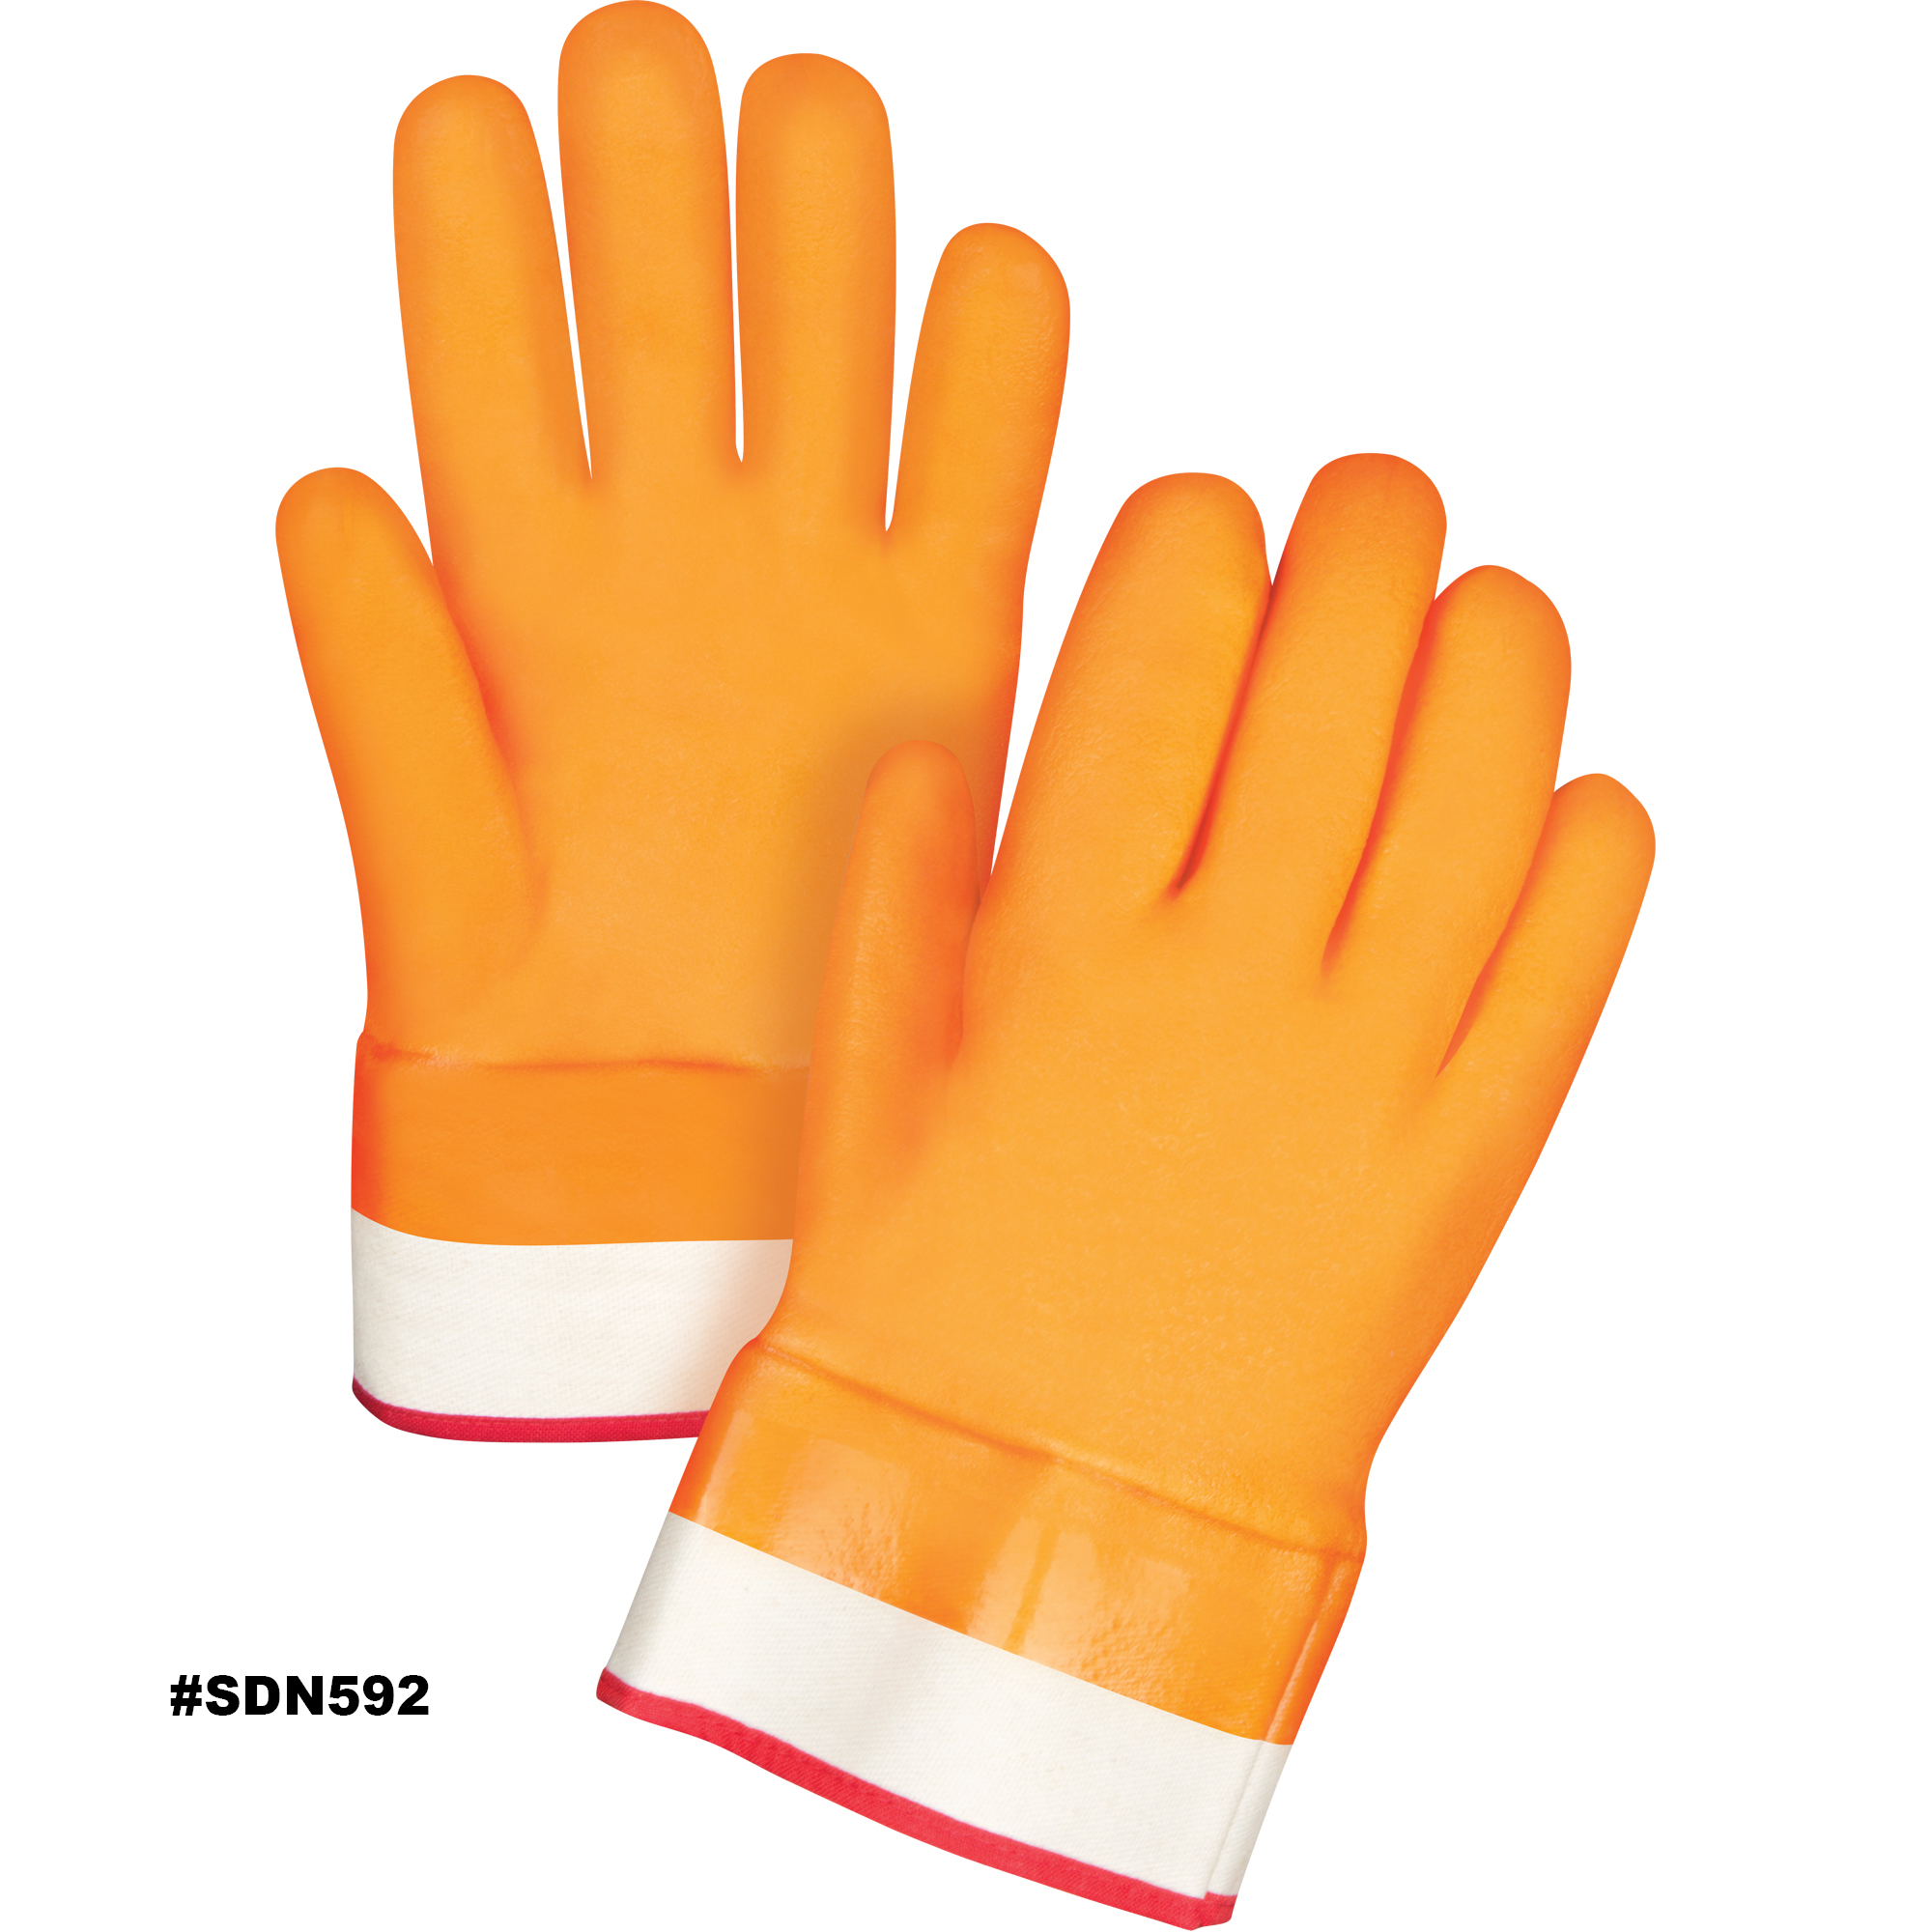 Zenith Winter Lined Gloves, Size Large/9, 10" L, PVC, Foam Fleece Inner Lining, Winter Weight Model: SDN592